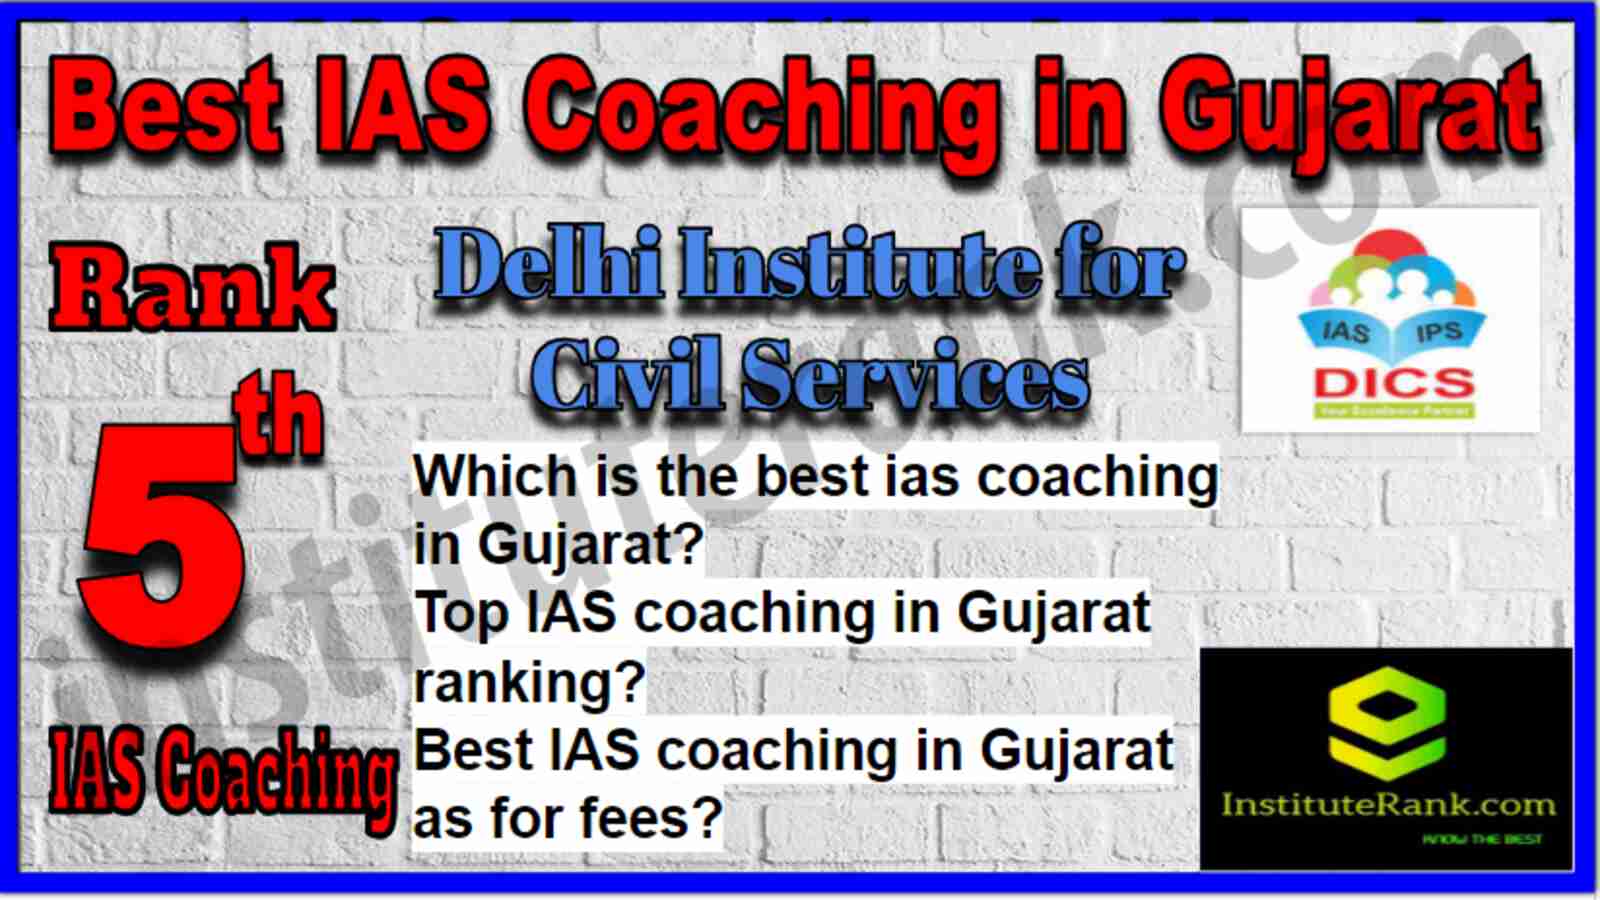 Rank 5 Best IAS Coaching in Gujarat